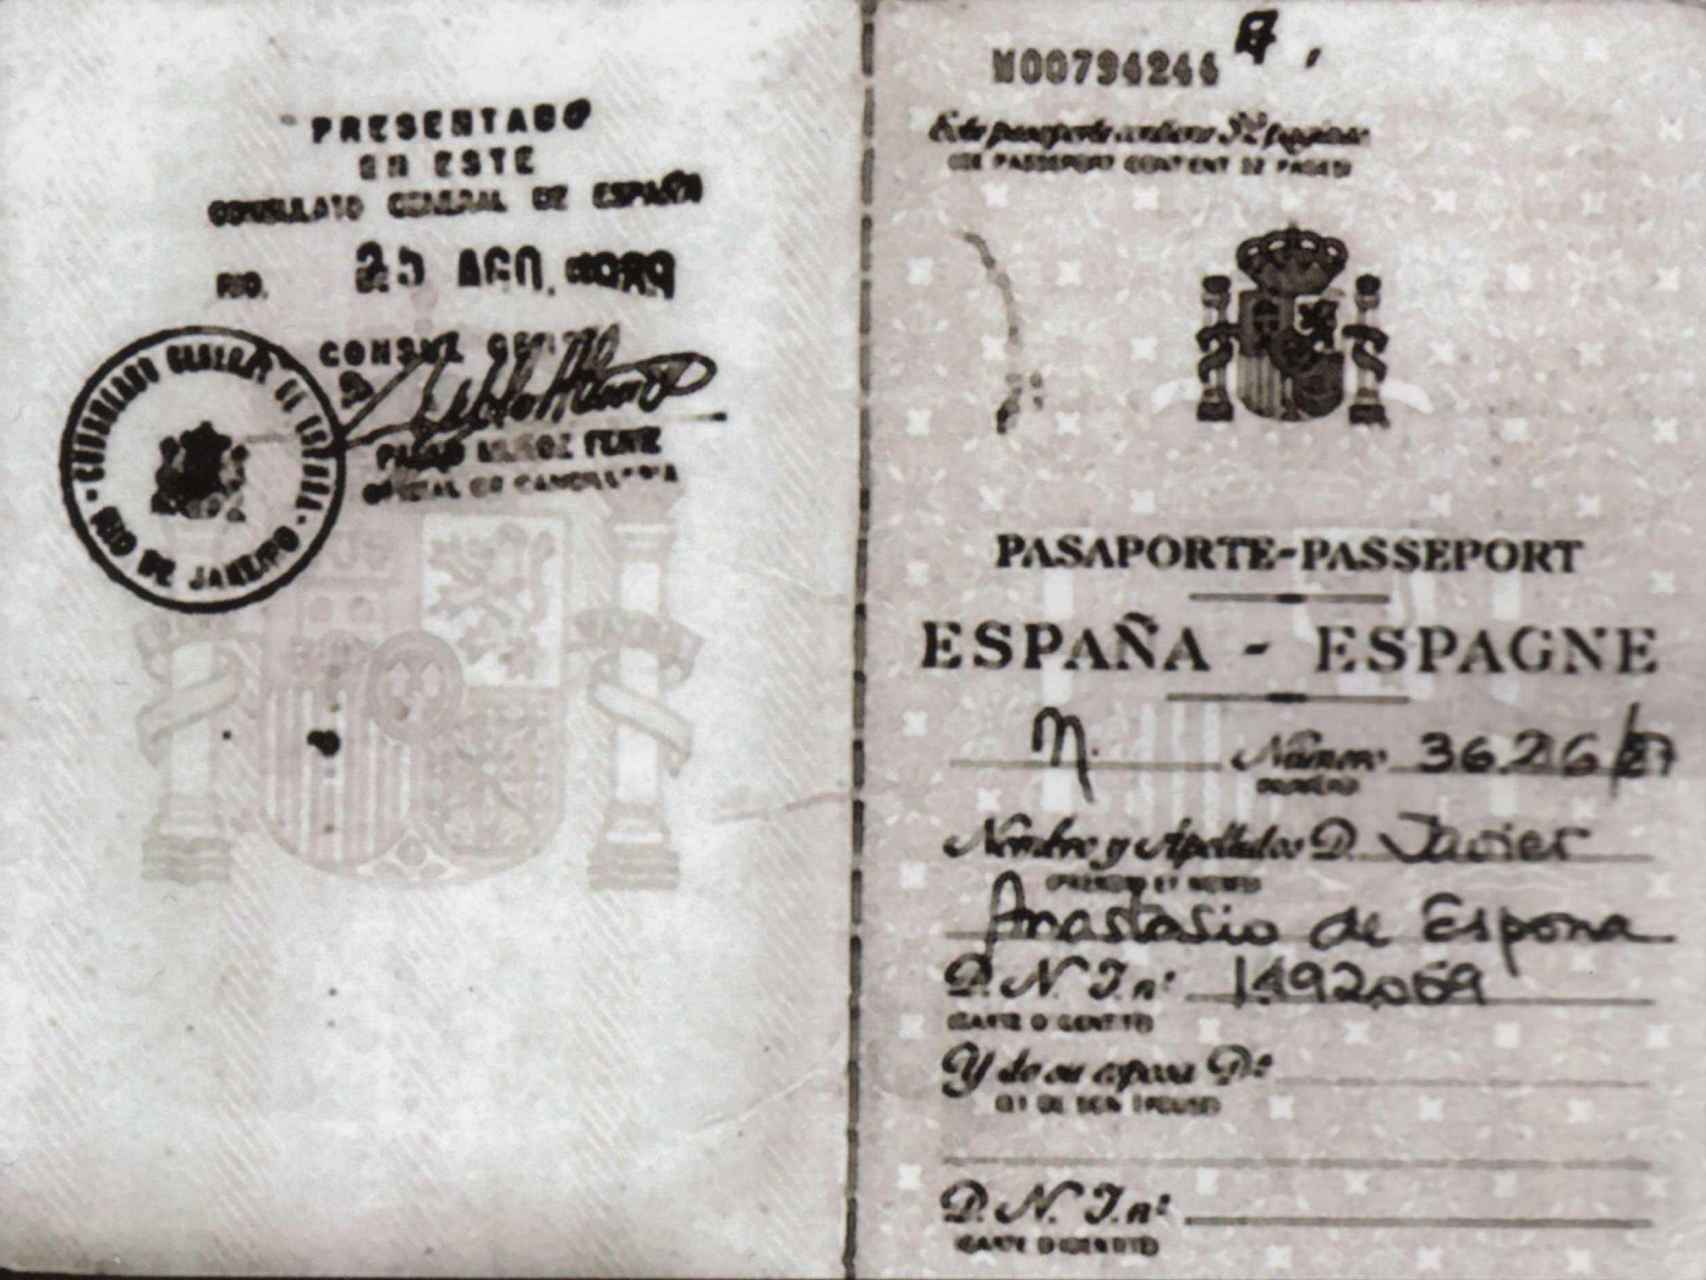 Pasaporte que le renovaron a Javier Anastasio en el consulado de España en Río de Janeiro cuando estaba en busca y captura.